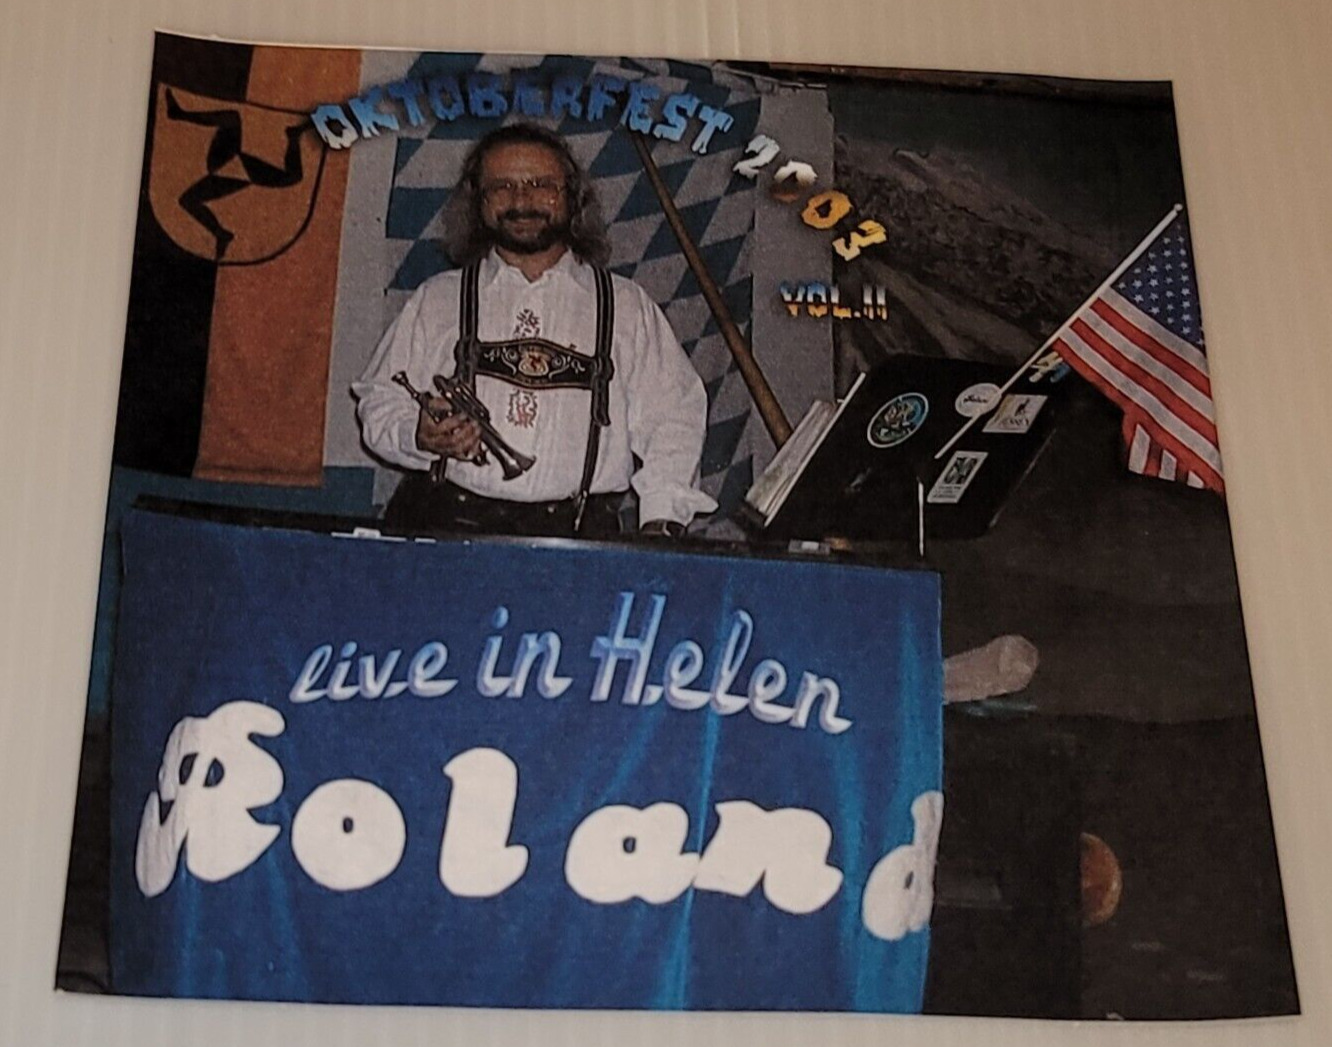 OKTOBERFEST 2003 HELEN VOL 11 ROLAND LIVE CD